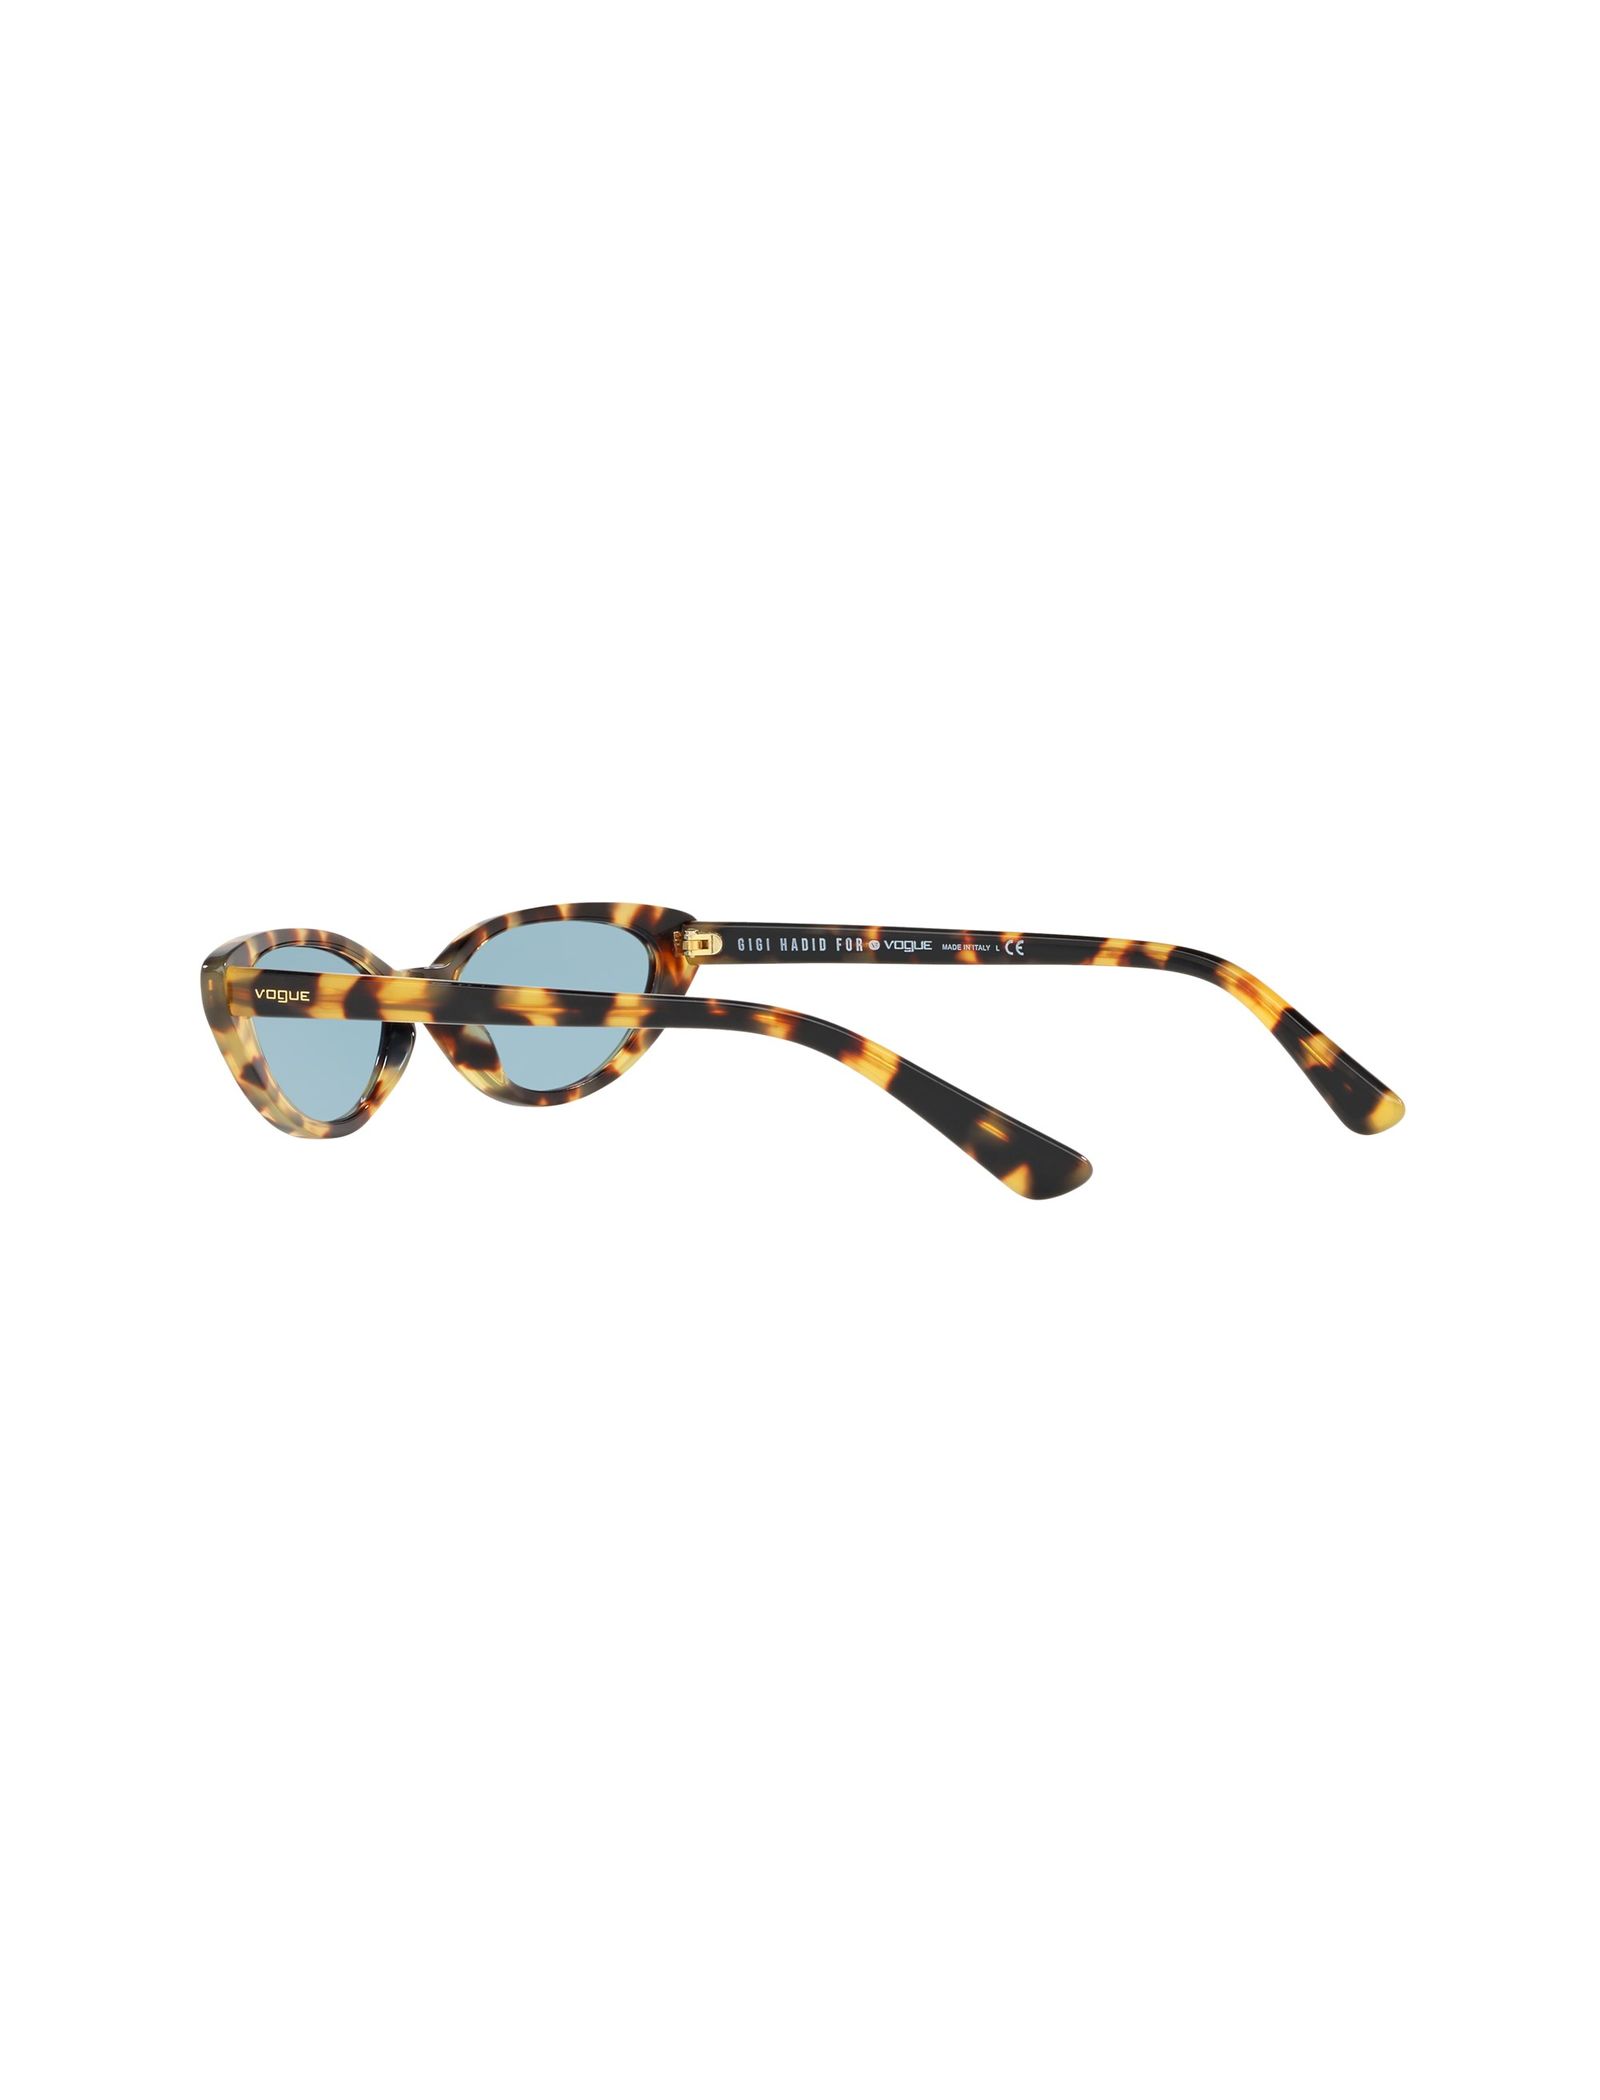 عینک آفتابی گربه ای زنانه - ووگ - قهوه اي و زرد - 9